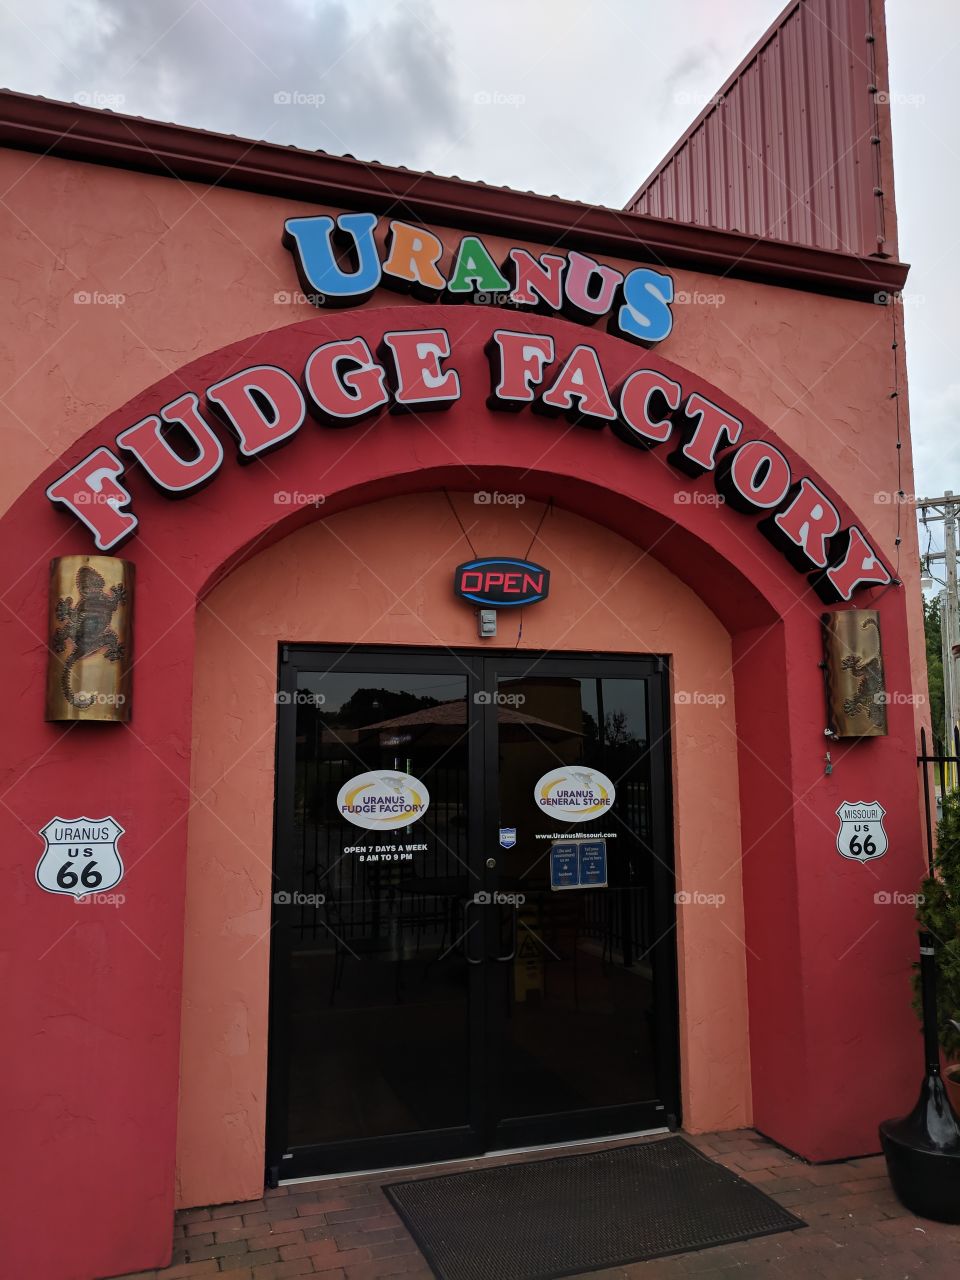 Uranus fudge factory